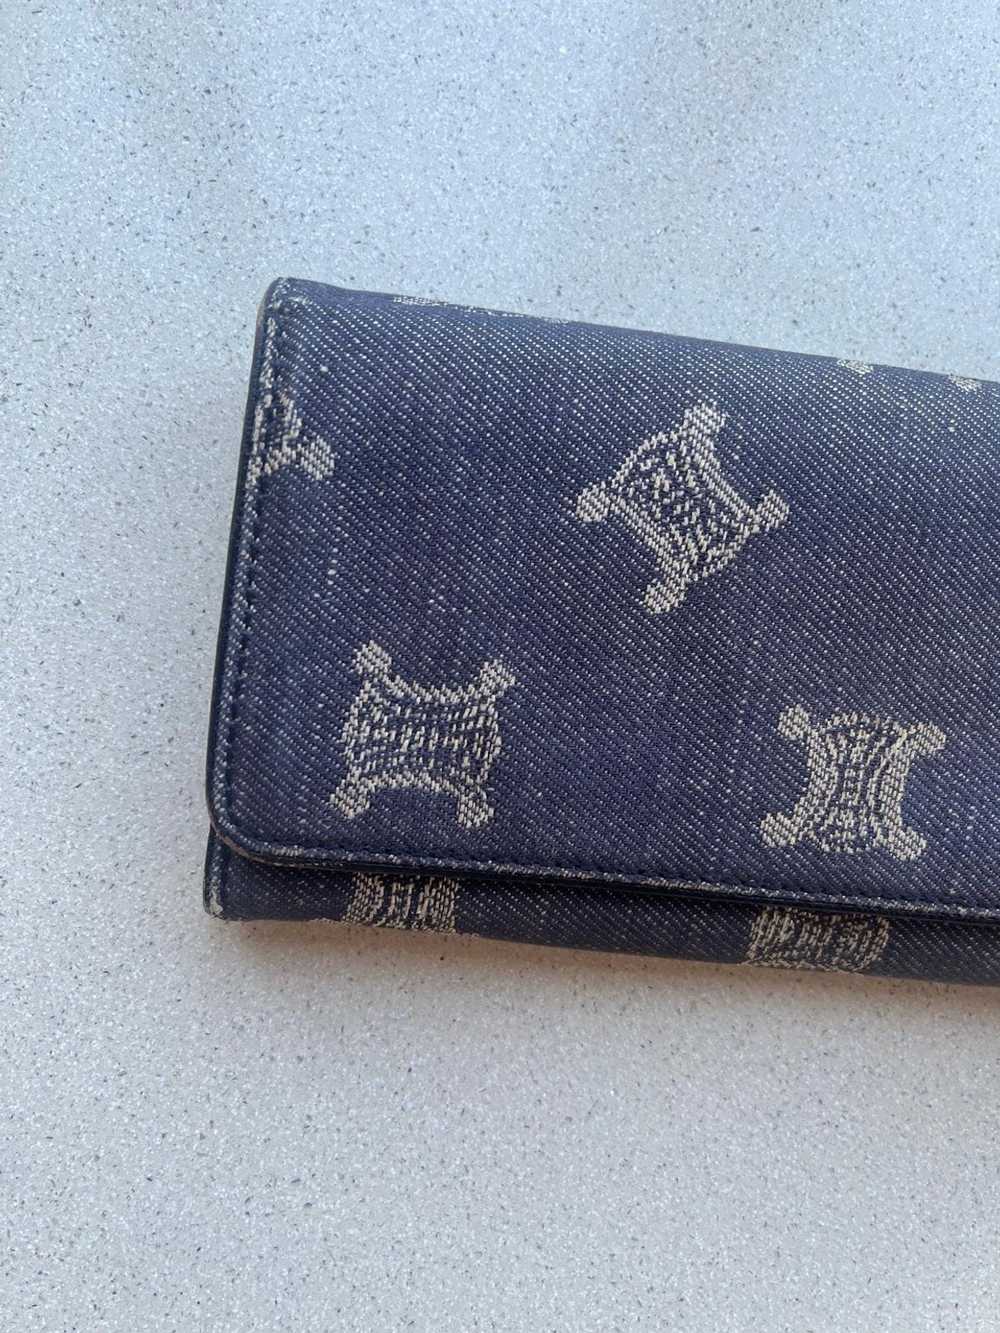 Celine Vintage Long Wallet in Graphite - image 4